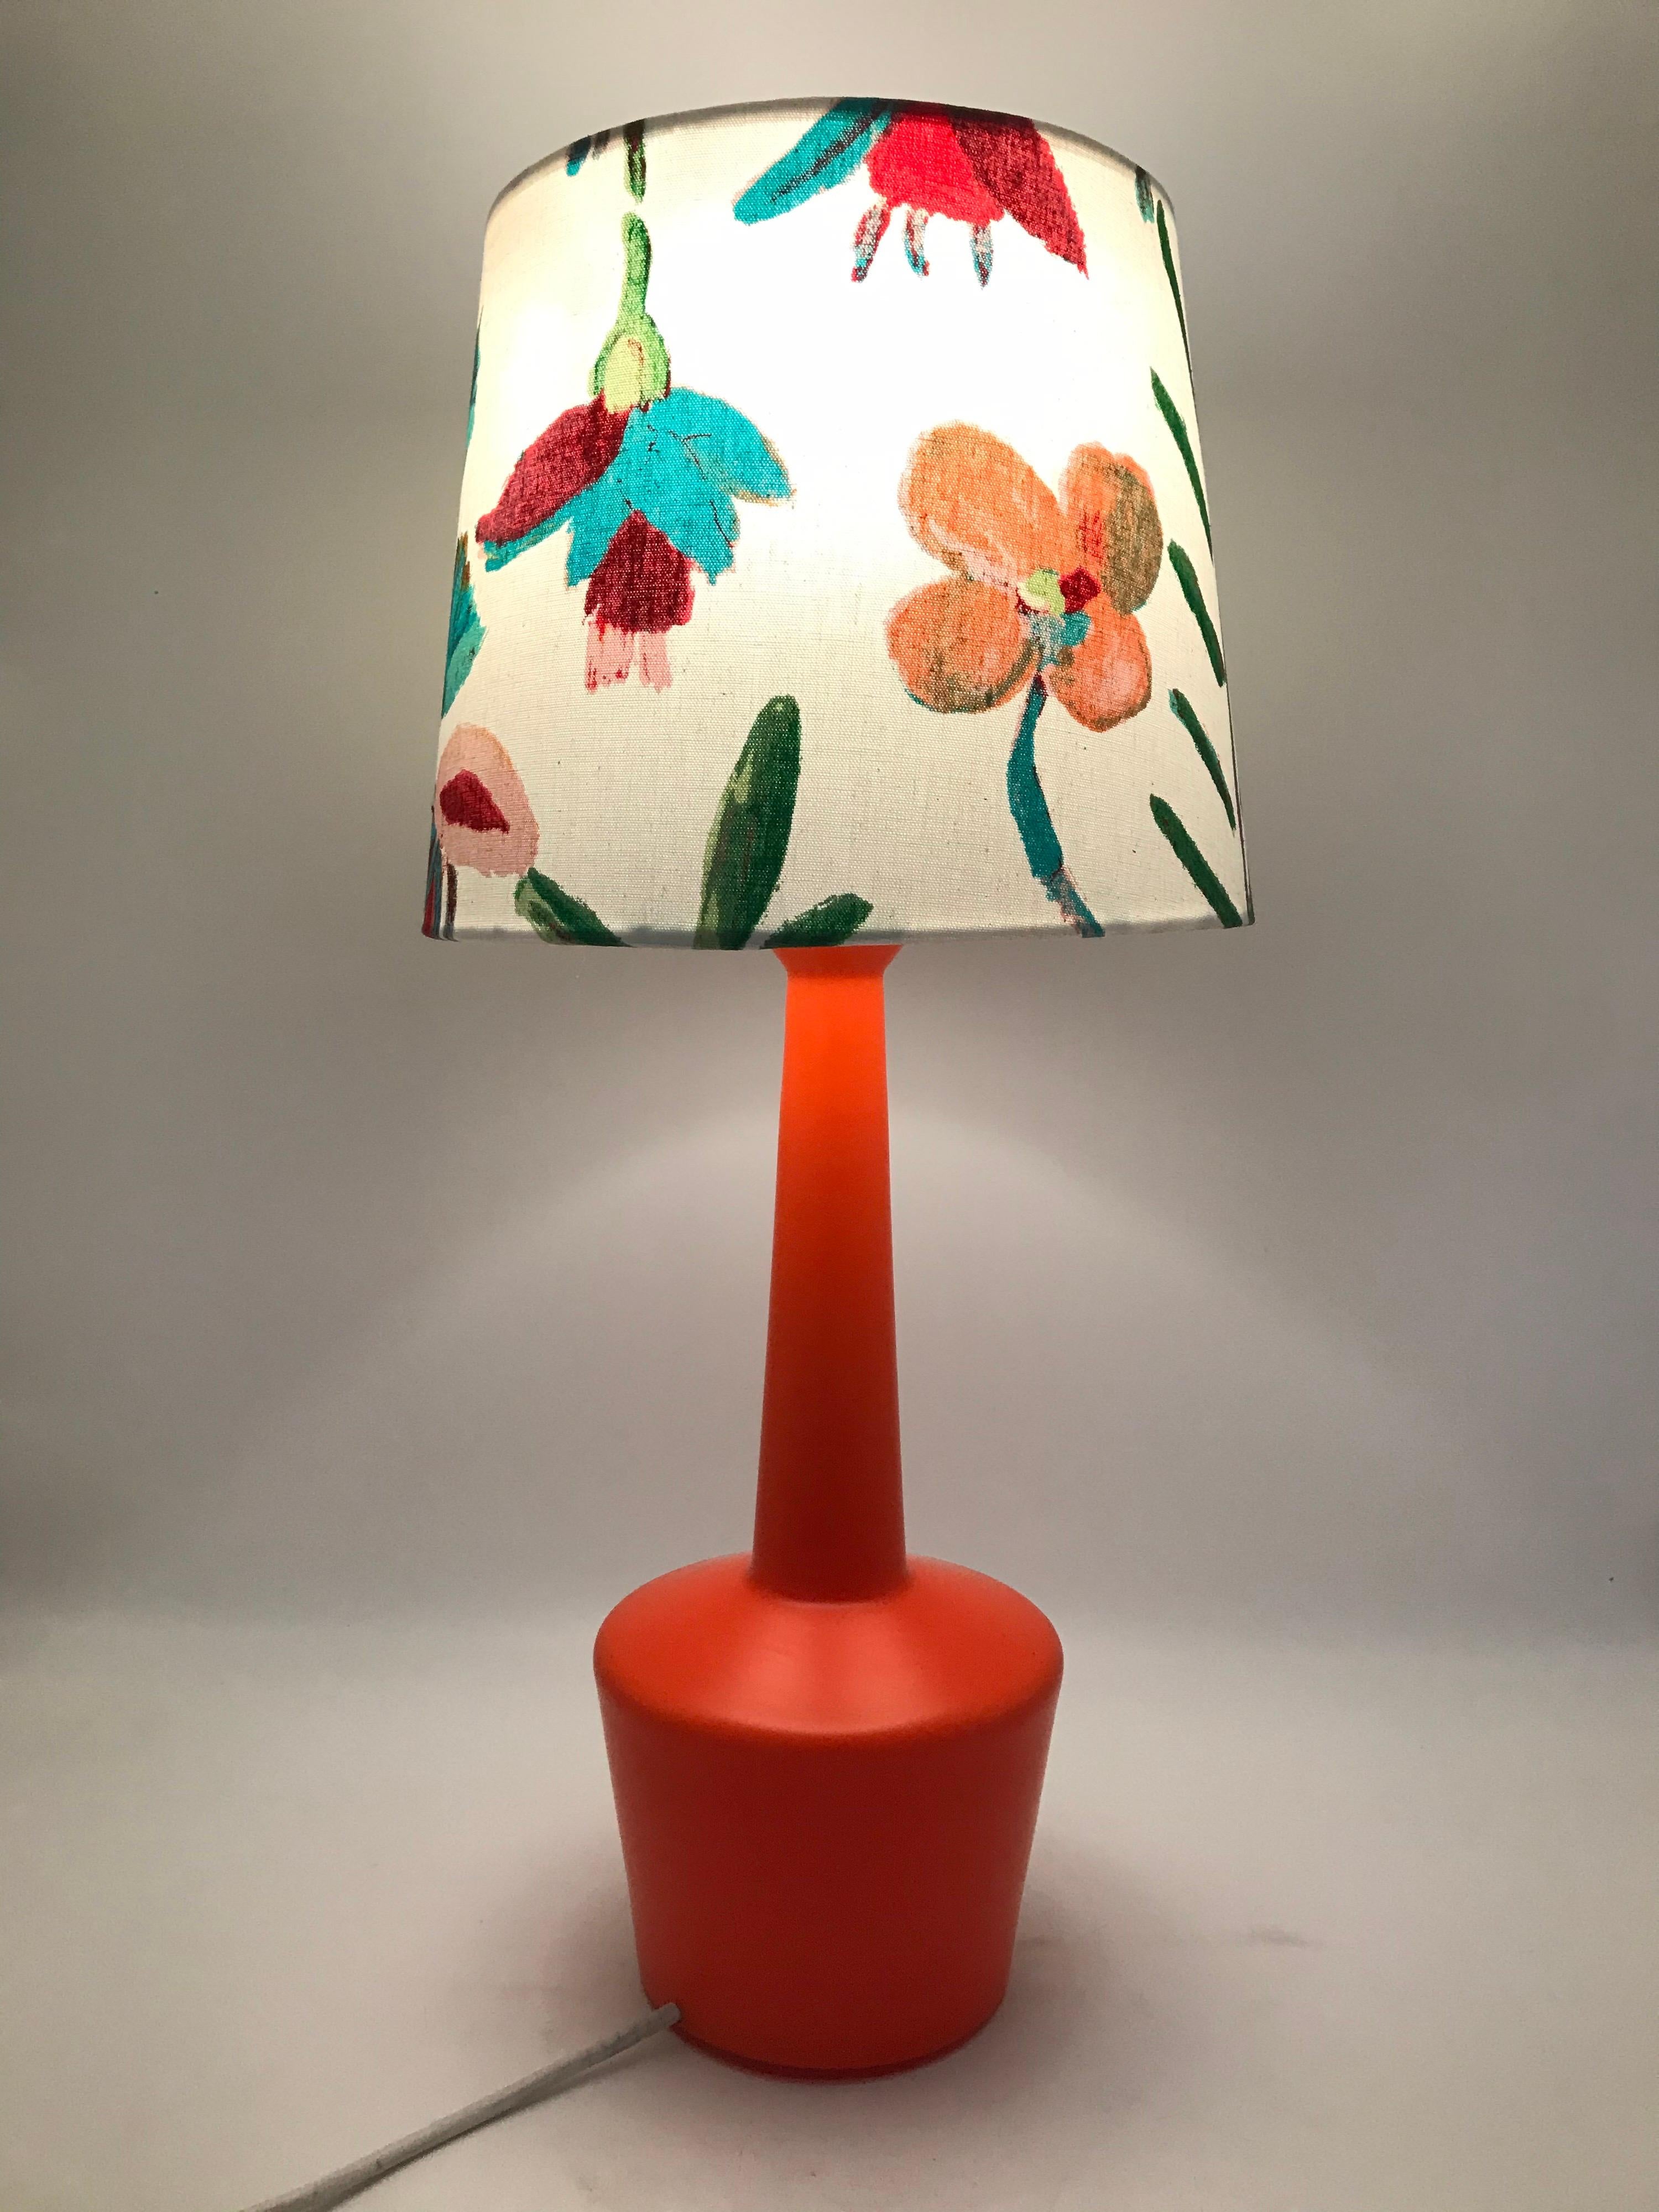 Lampe de table danoise vintage par Kastrup Glass Works des années 1960
La lampe en verre, avec sa superbe couleur orange, et le motif floral sur l'abat-jour blanc sont très élégants, même s'ils ont été fabriqués à 50 ans d'intervalle.
Abat-jour non